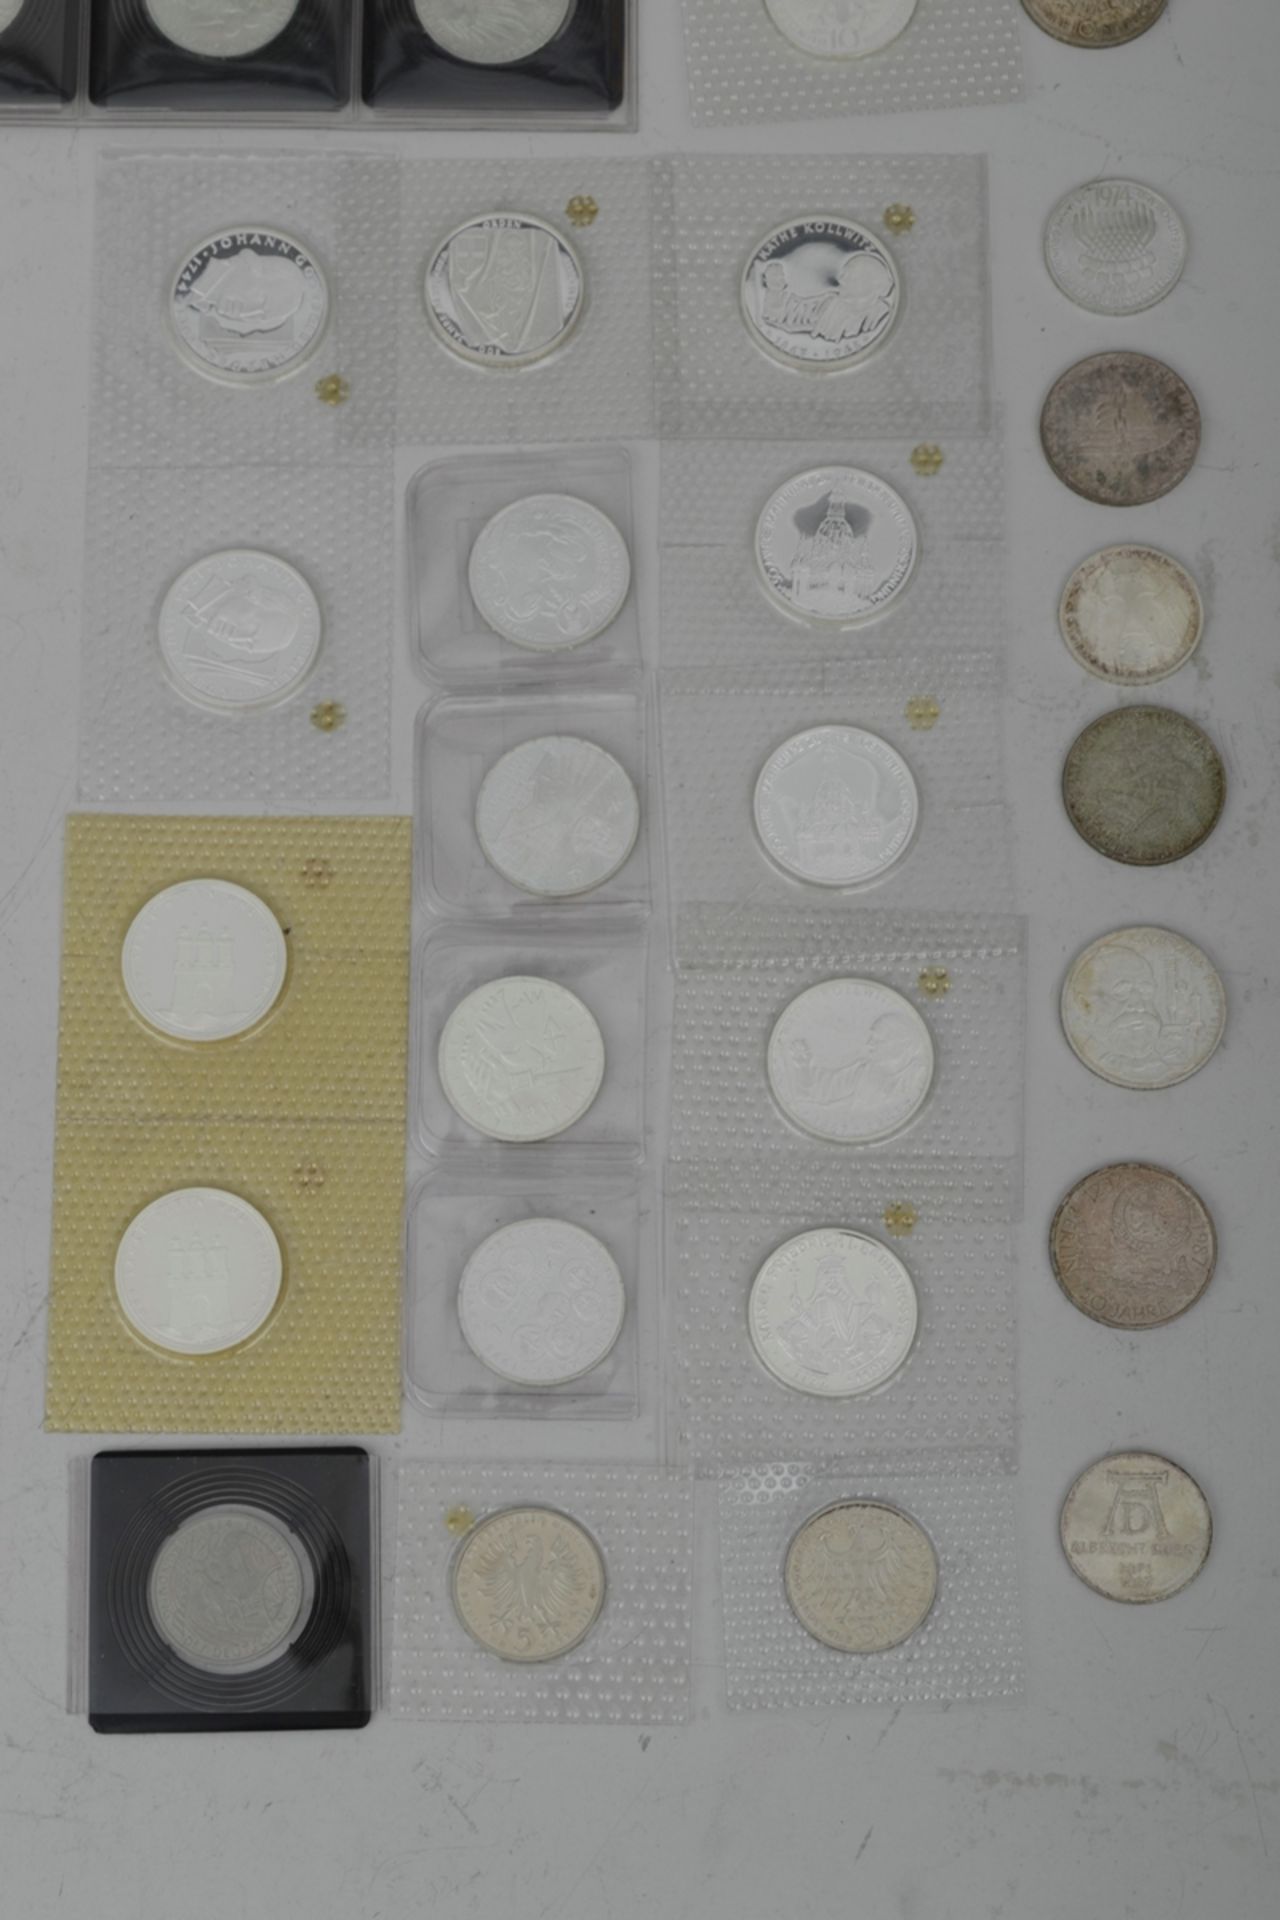 110tlg. Sammlung von 41 x 5 DM und 69 x 10 DM Münzen, teilweise Silber, zusammen ca. 895,- DM. Vers - Bild 4 aus 9